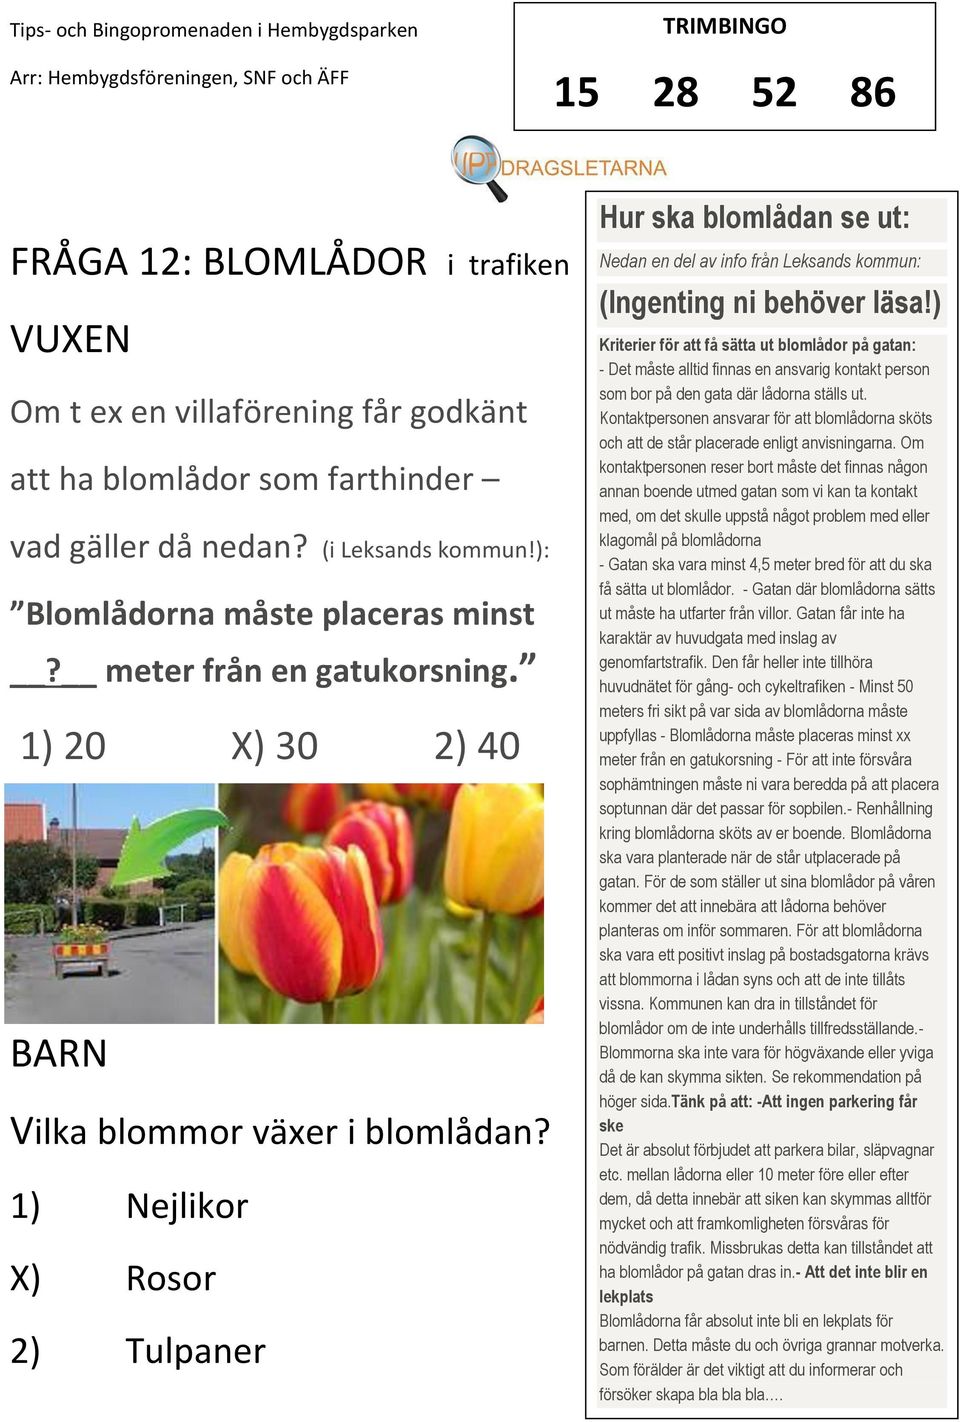 1) Nejlikor ) Rosor 2) Tulpaner Hur ska blomlådan se ut: Nedan en del av info från Leksands kommun: (Ingenting ni behöver läsa!